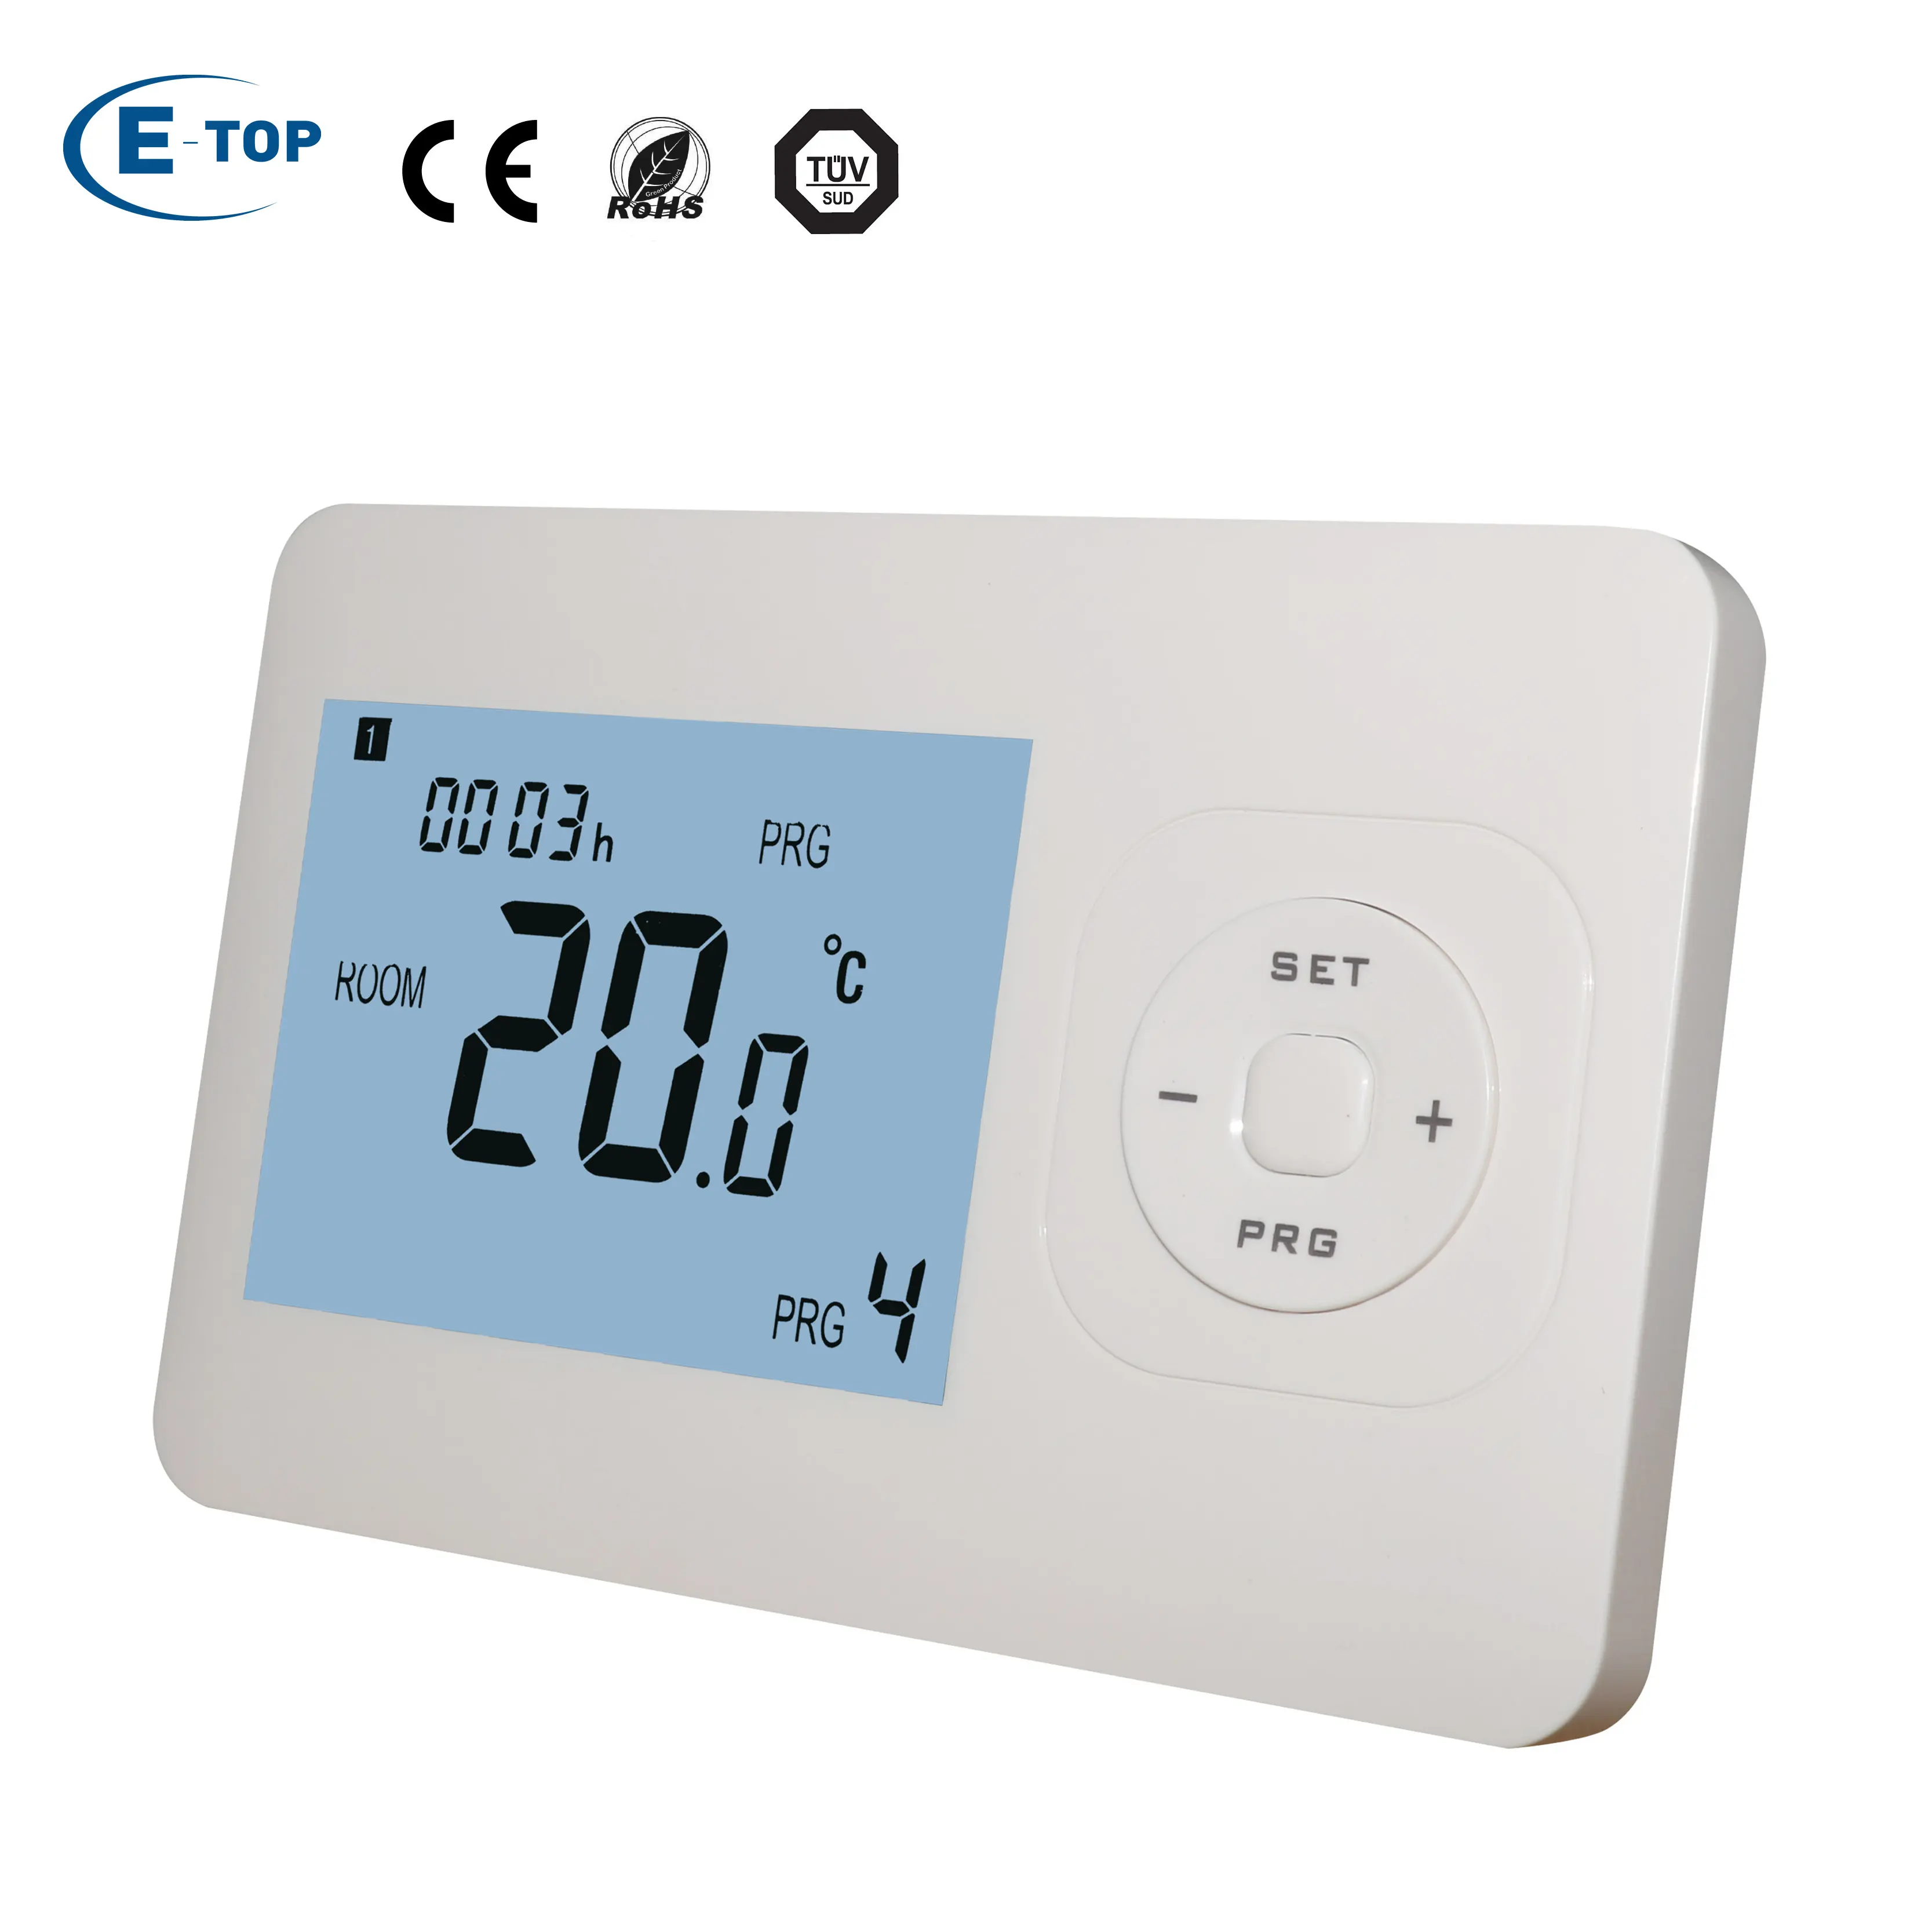 Termostato de aquecimento para caldeira rf, fabricante E-TOP WT-02 com 7 dias programáveis